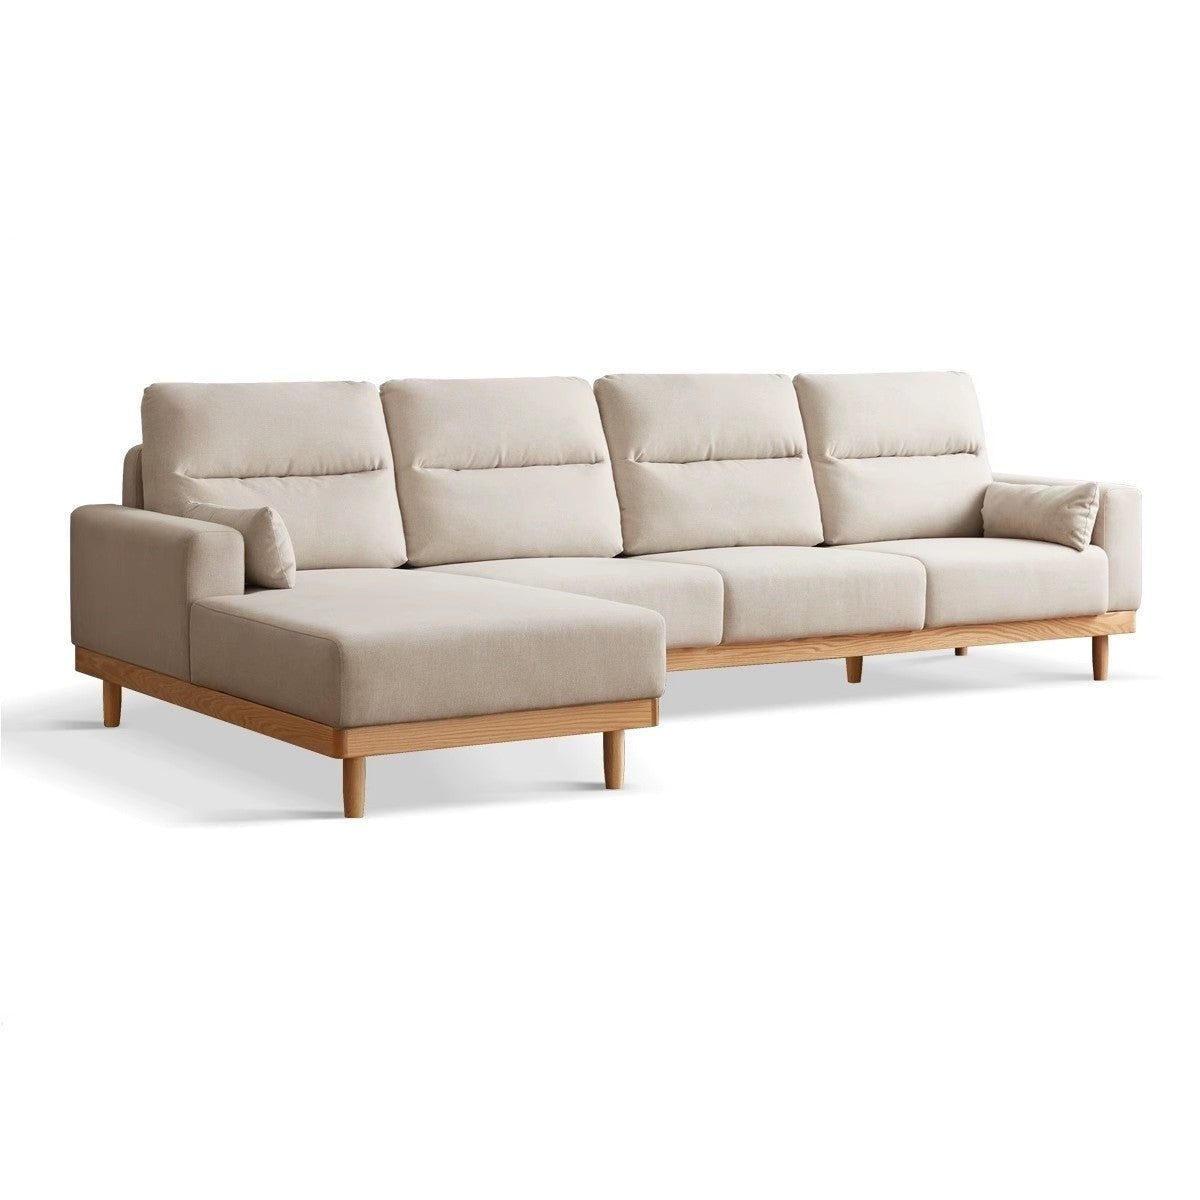 Oak solid wood corner sofa "